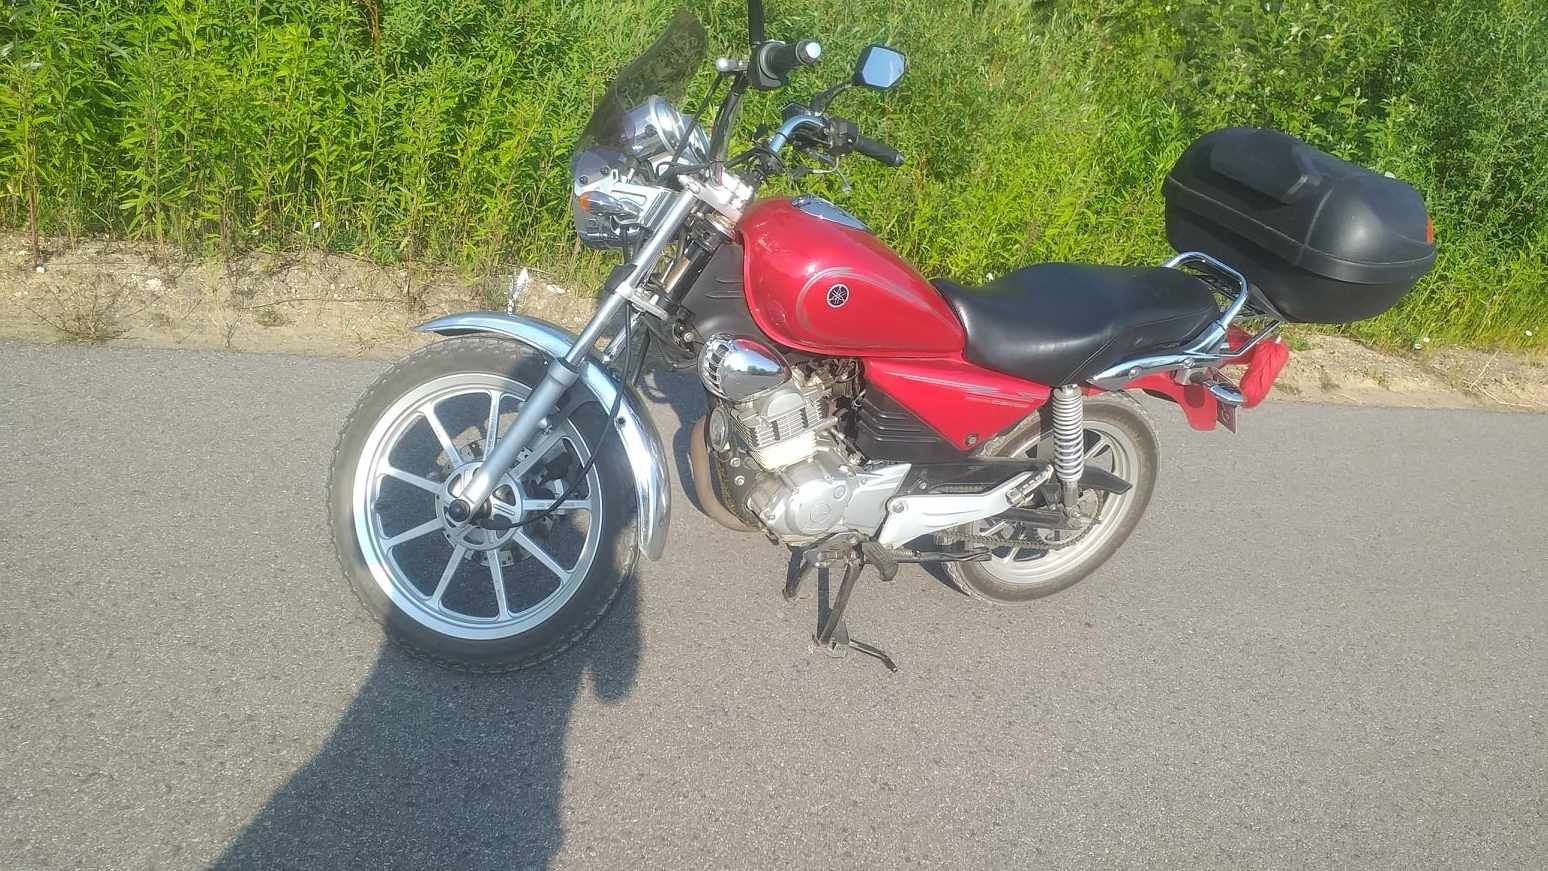 Motocykl Yamaha yb125